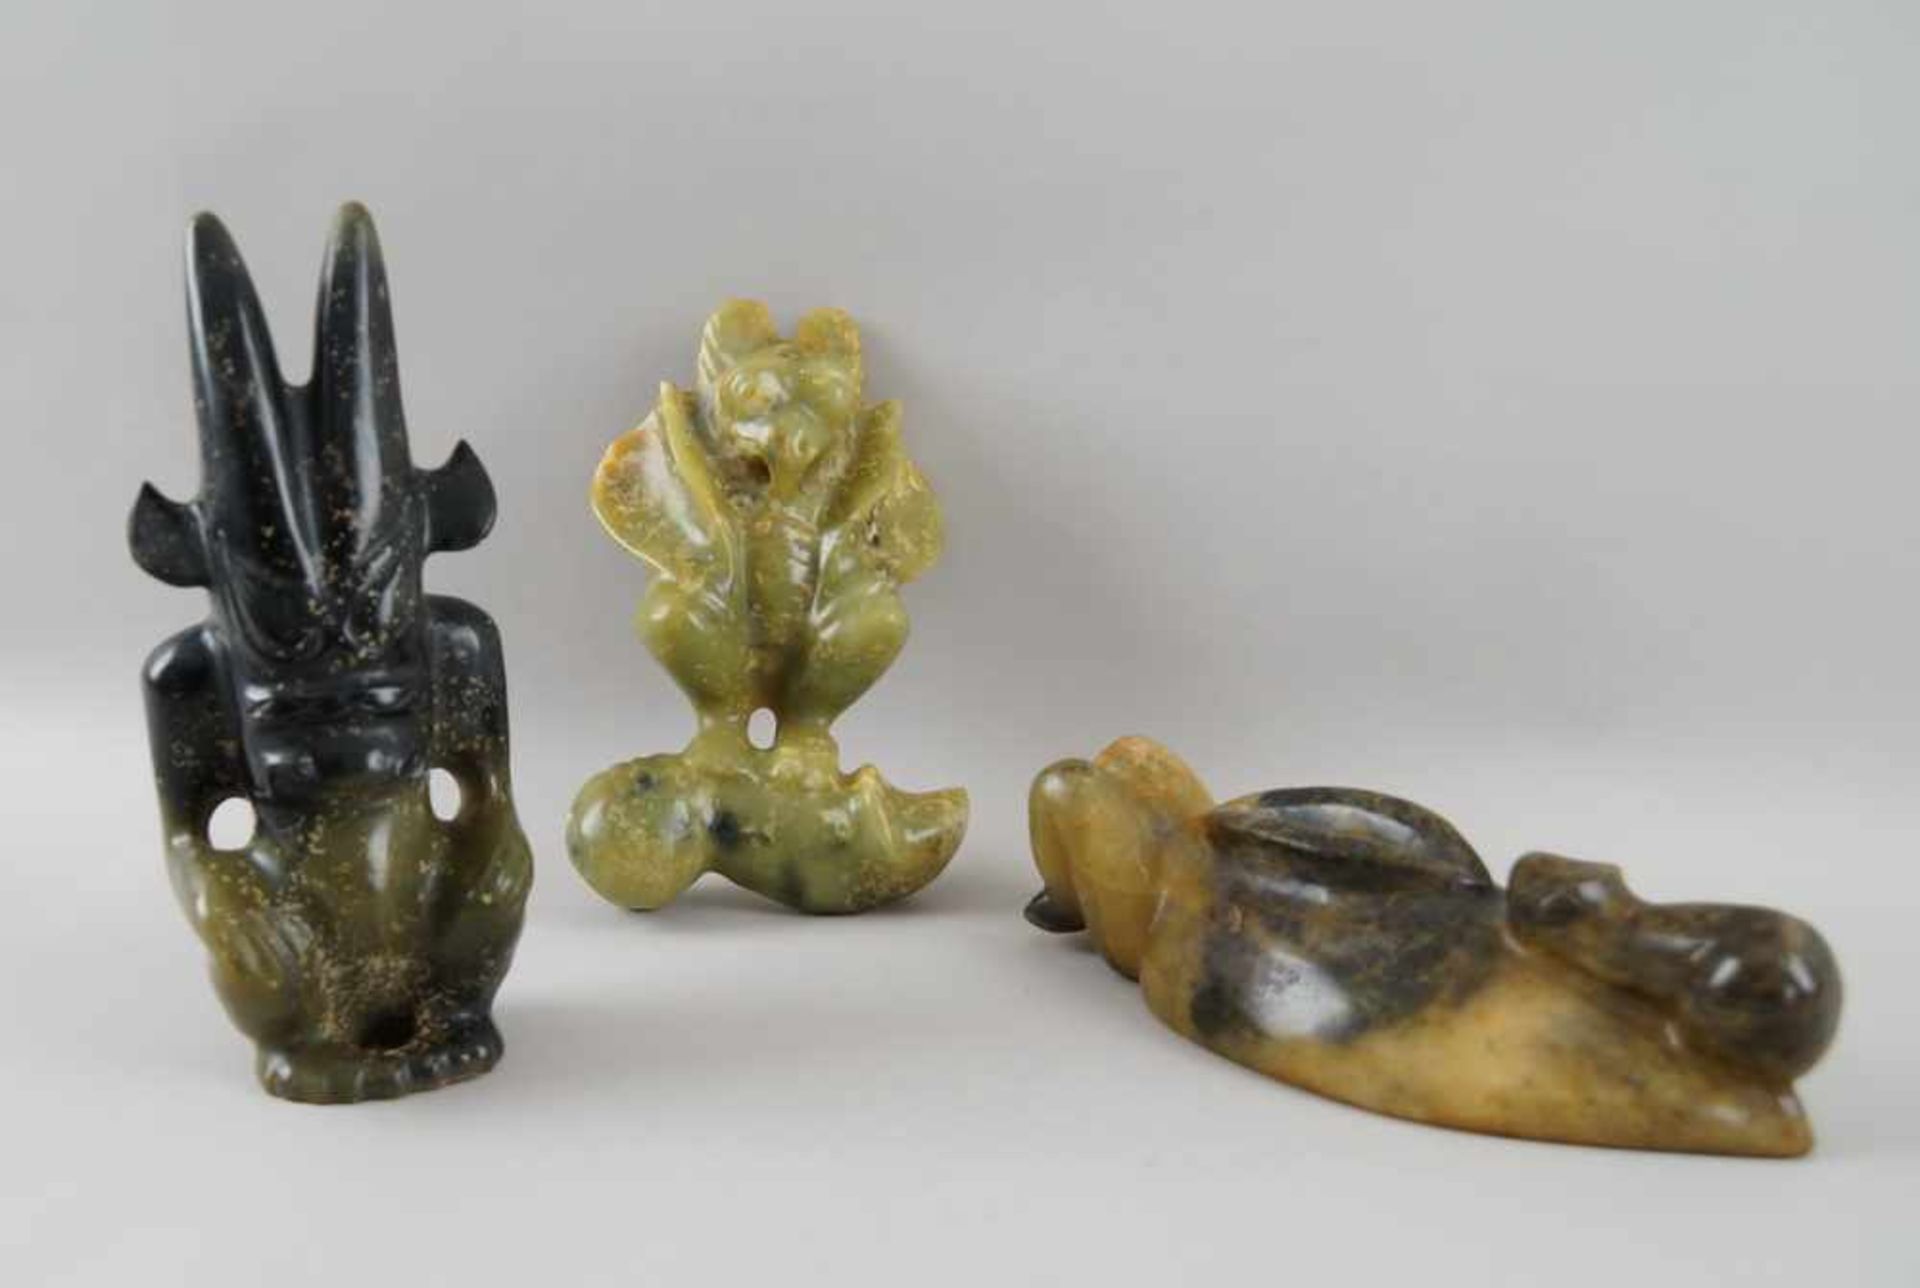 Drei verschiedene Ritualskulpturen / Phallusskulpturen, Stein/Marmor geschnitzt, 20-24 cm